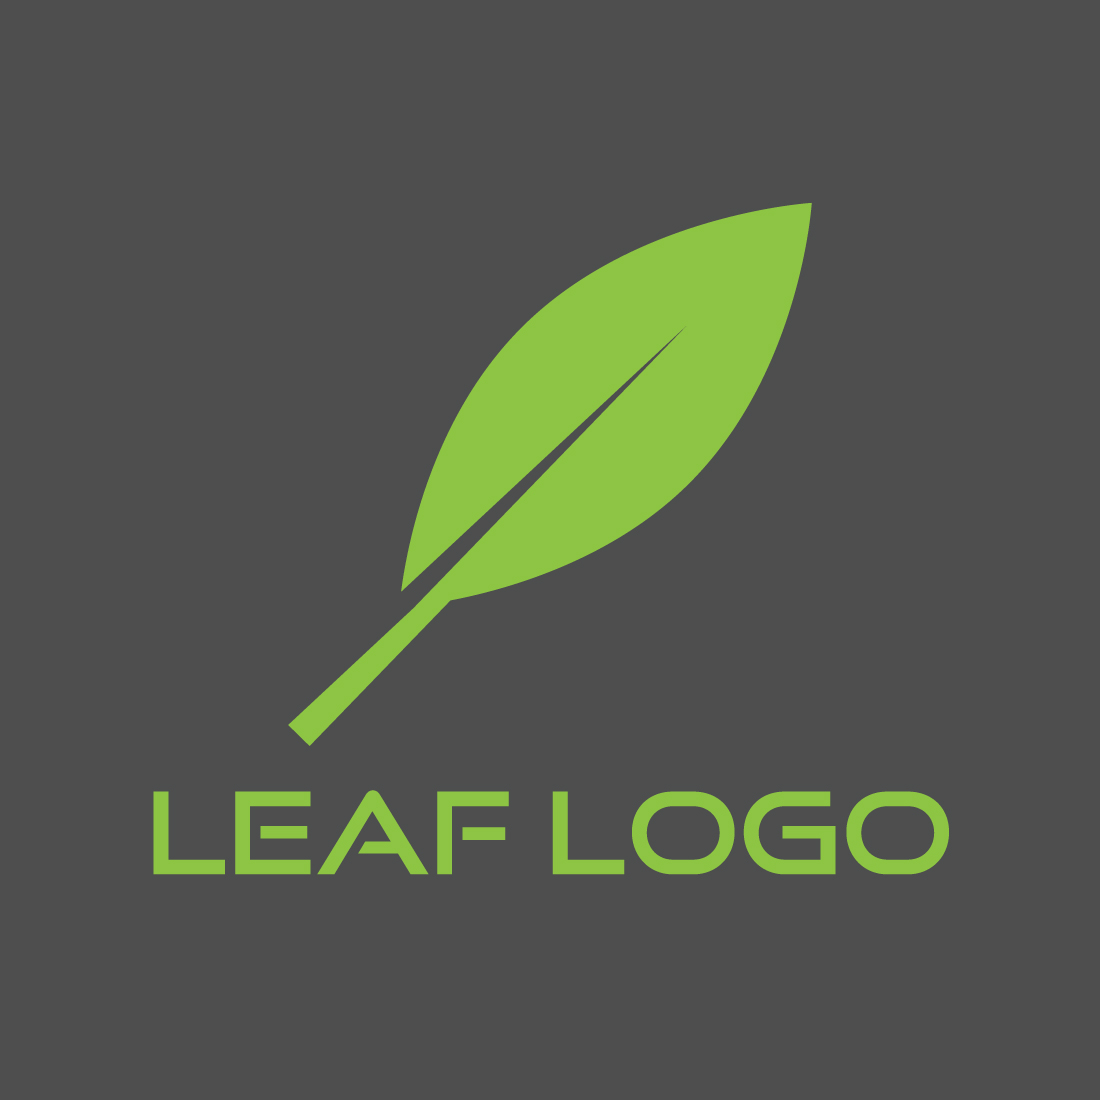 Green leaf logo, Simple leaf logo, Modern leaf logo, Creative leaf logo, Unique leaf logo, Stylish leaf logo, Vector file & template cover image.